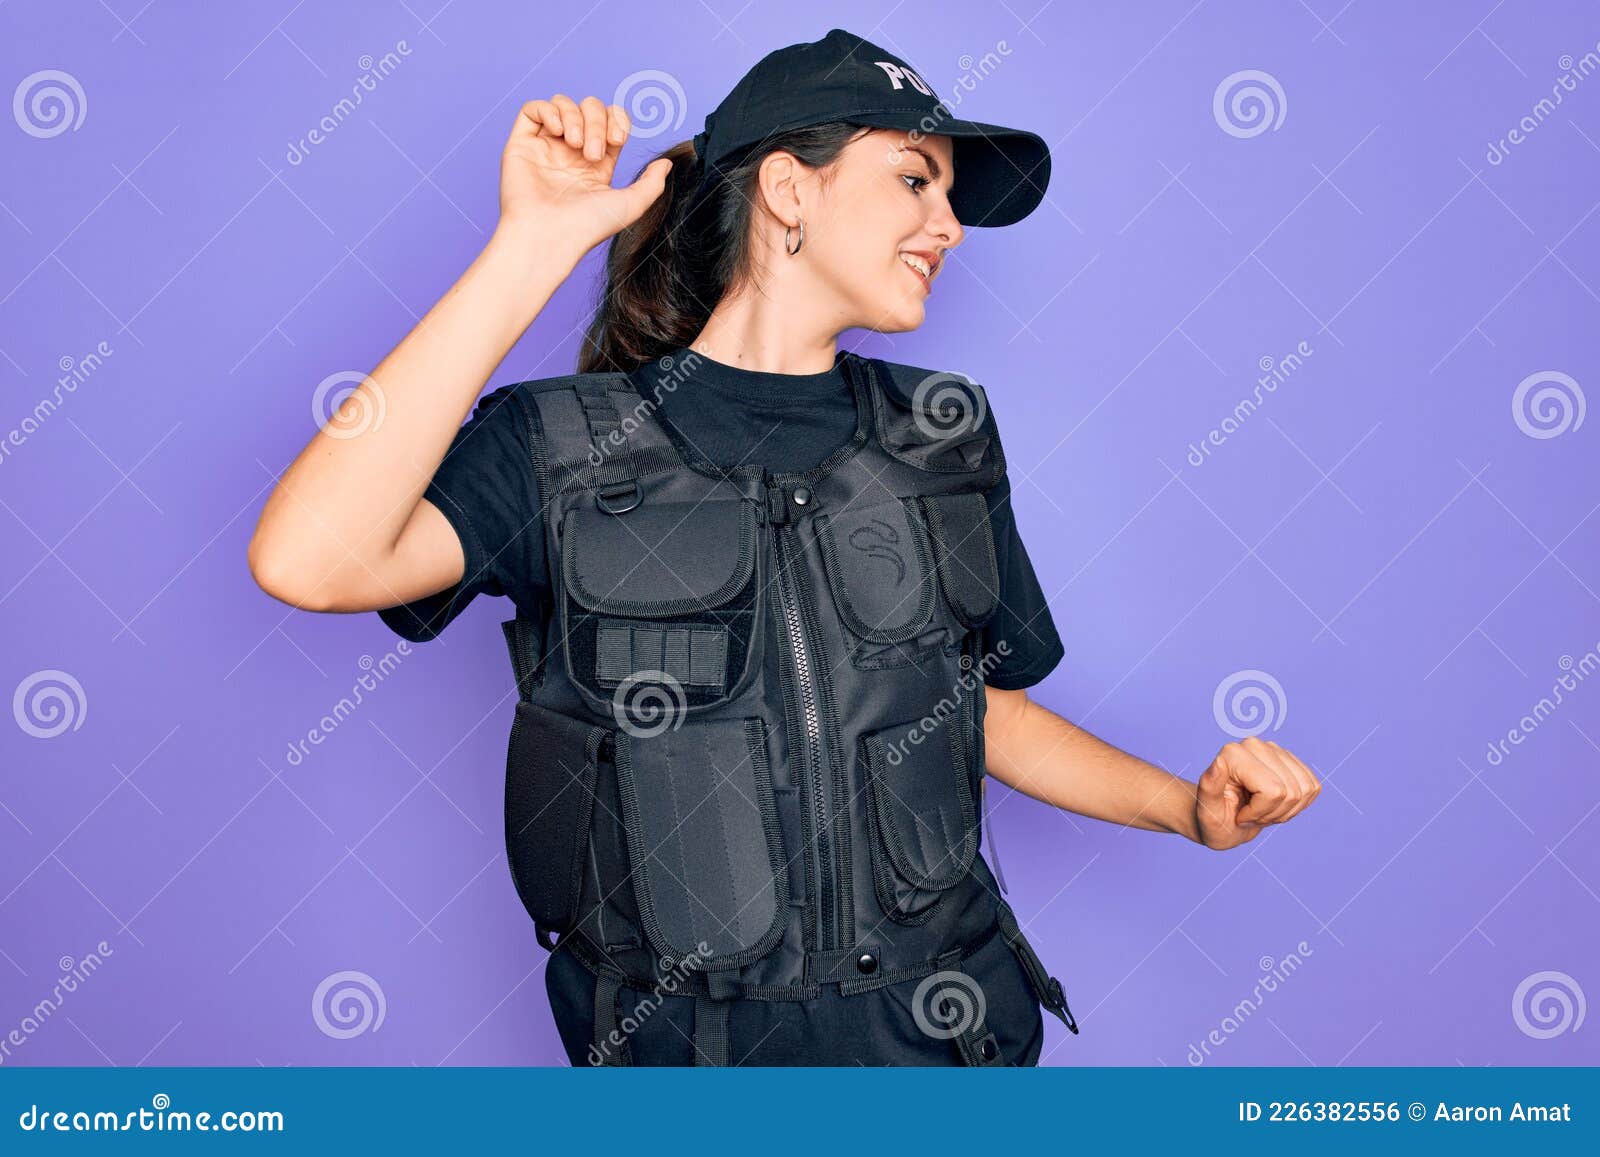 Joven Mujer Policía Con Uniforme De Chaleco Antibalas De Seguridad Sobre Fondo Morado Bailando Feliz Y Alegre Sonriente Foto de archivo - Imagen de movimiento, poli: 226382556